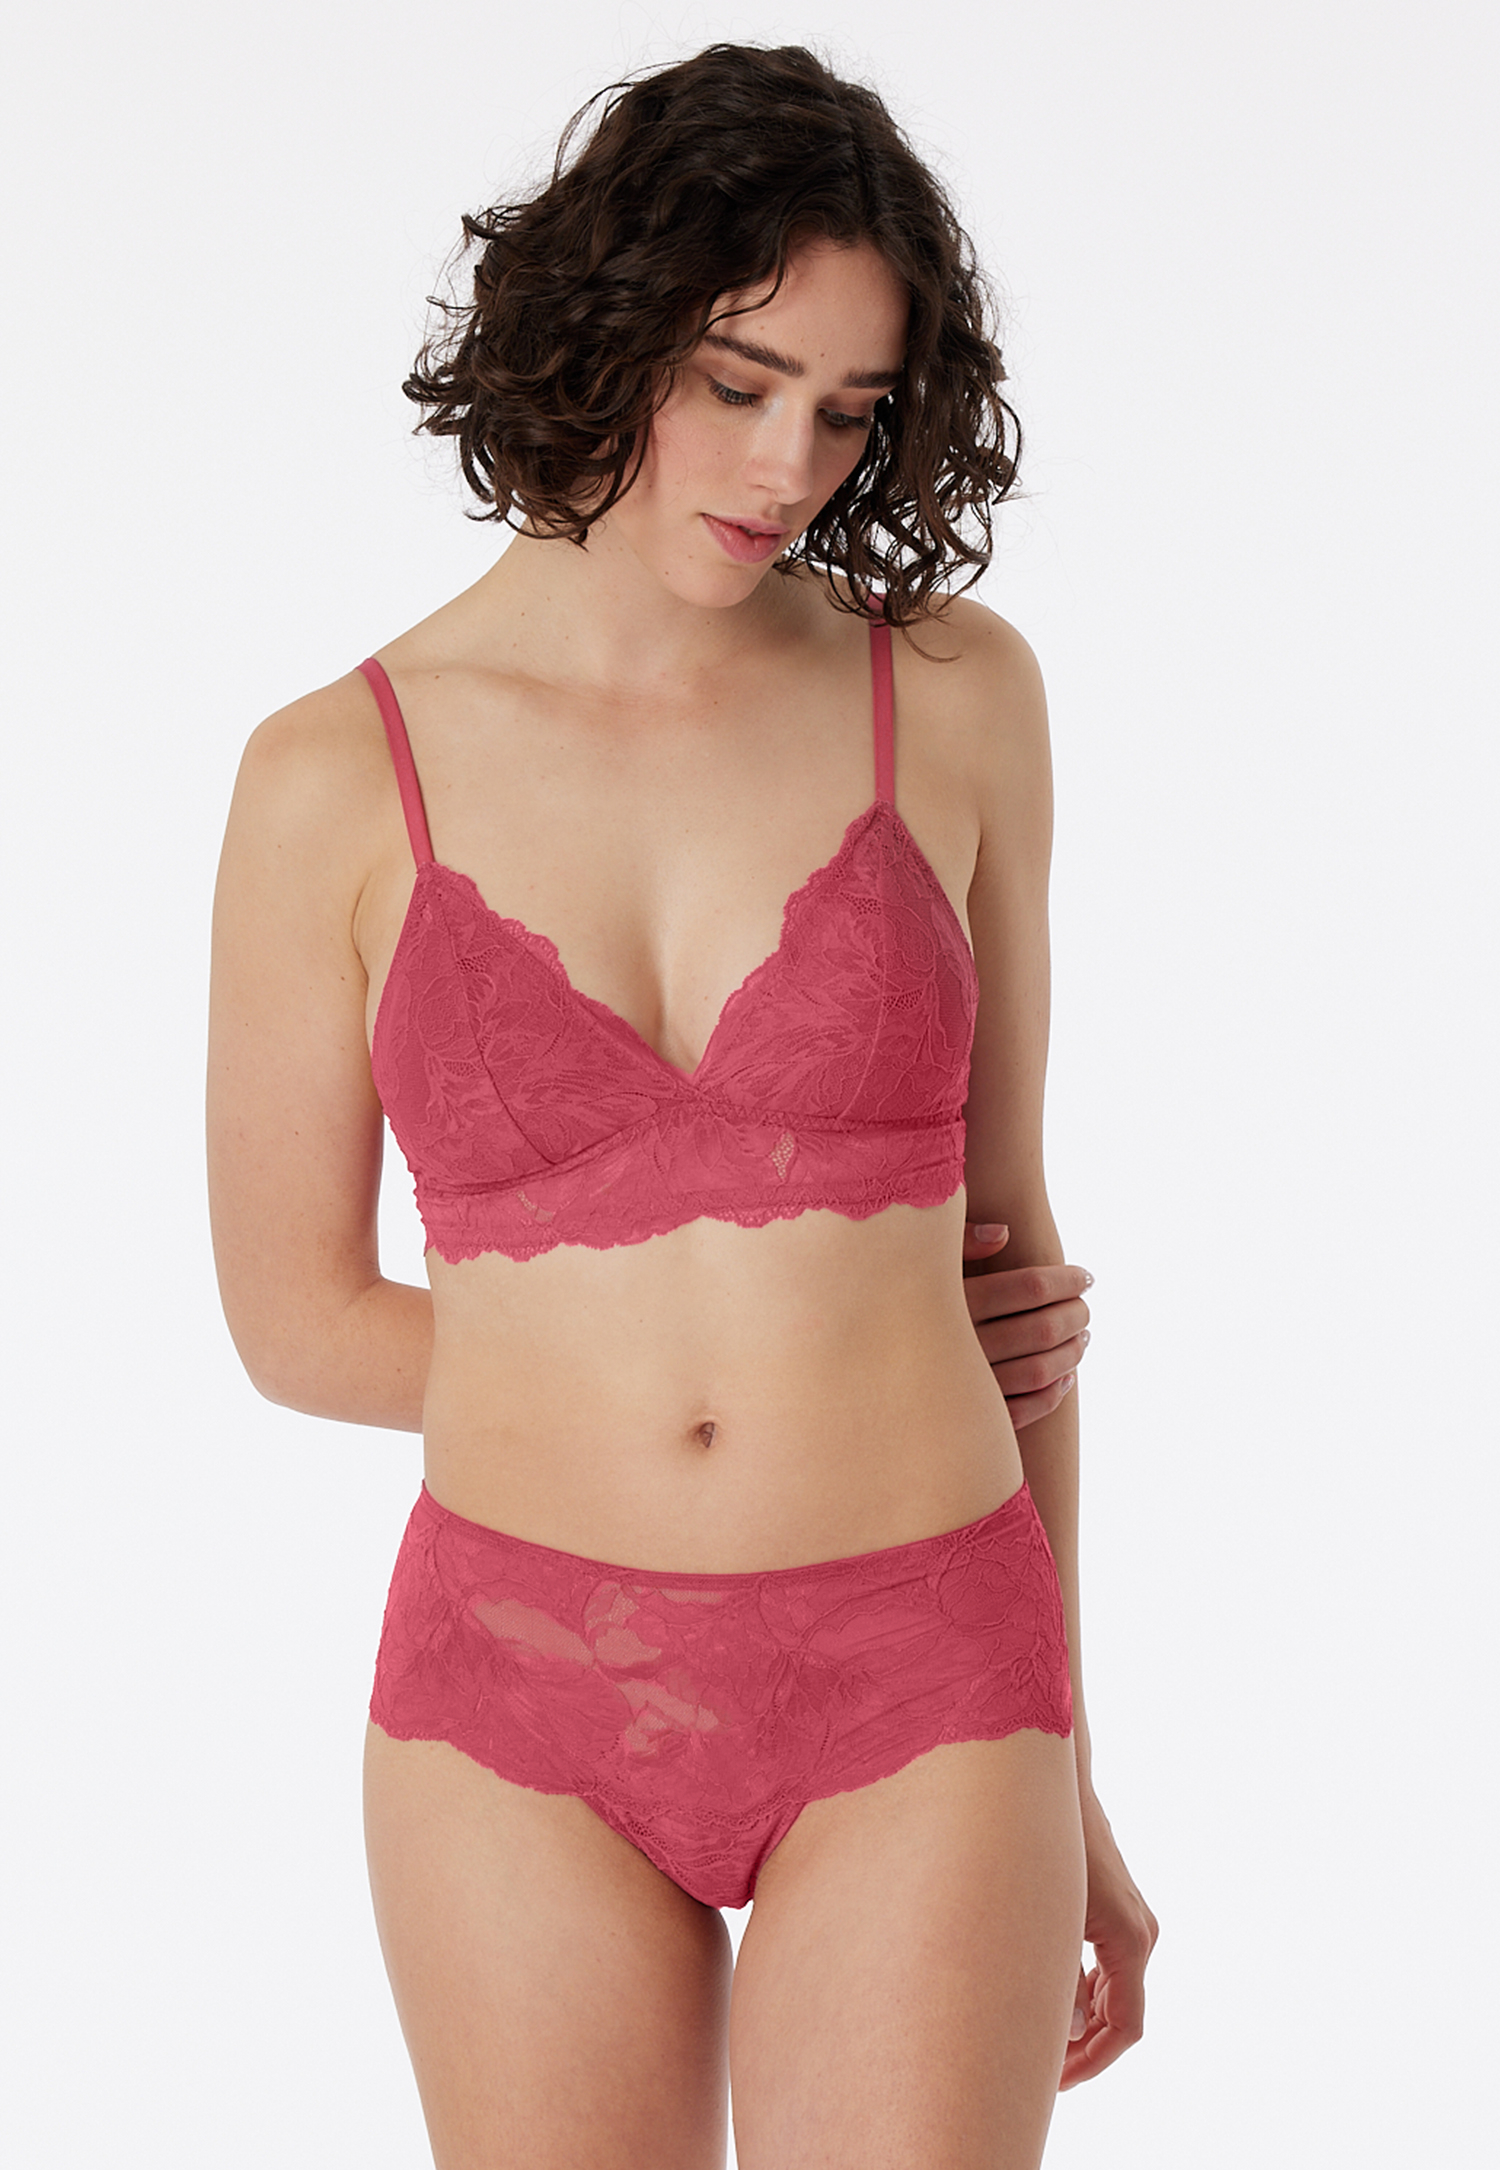 Panty Spitze pink - Modal & Lace 34 von Schiesser